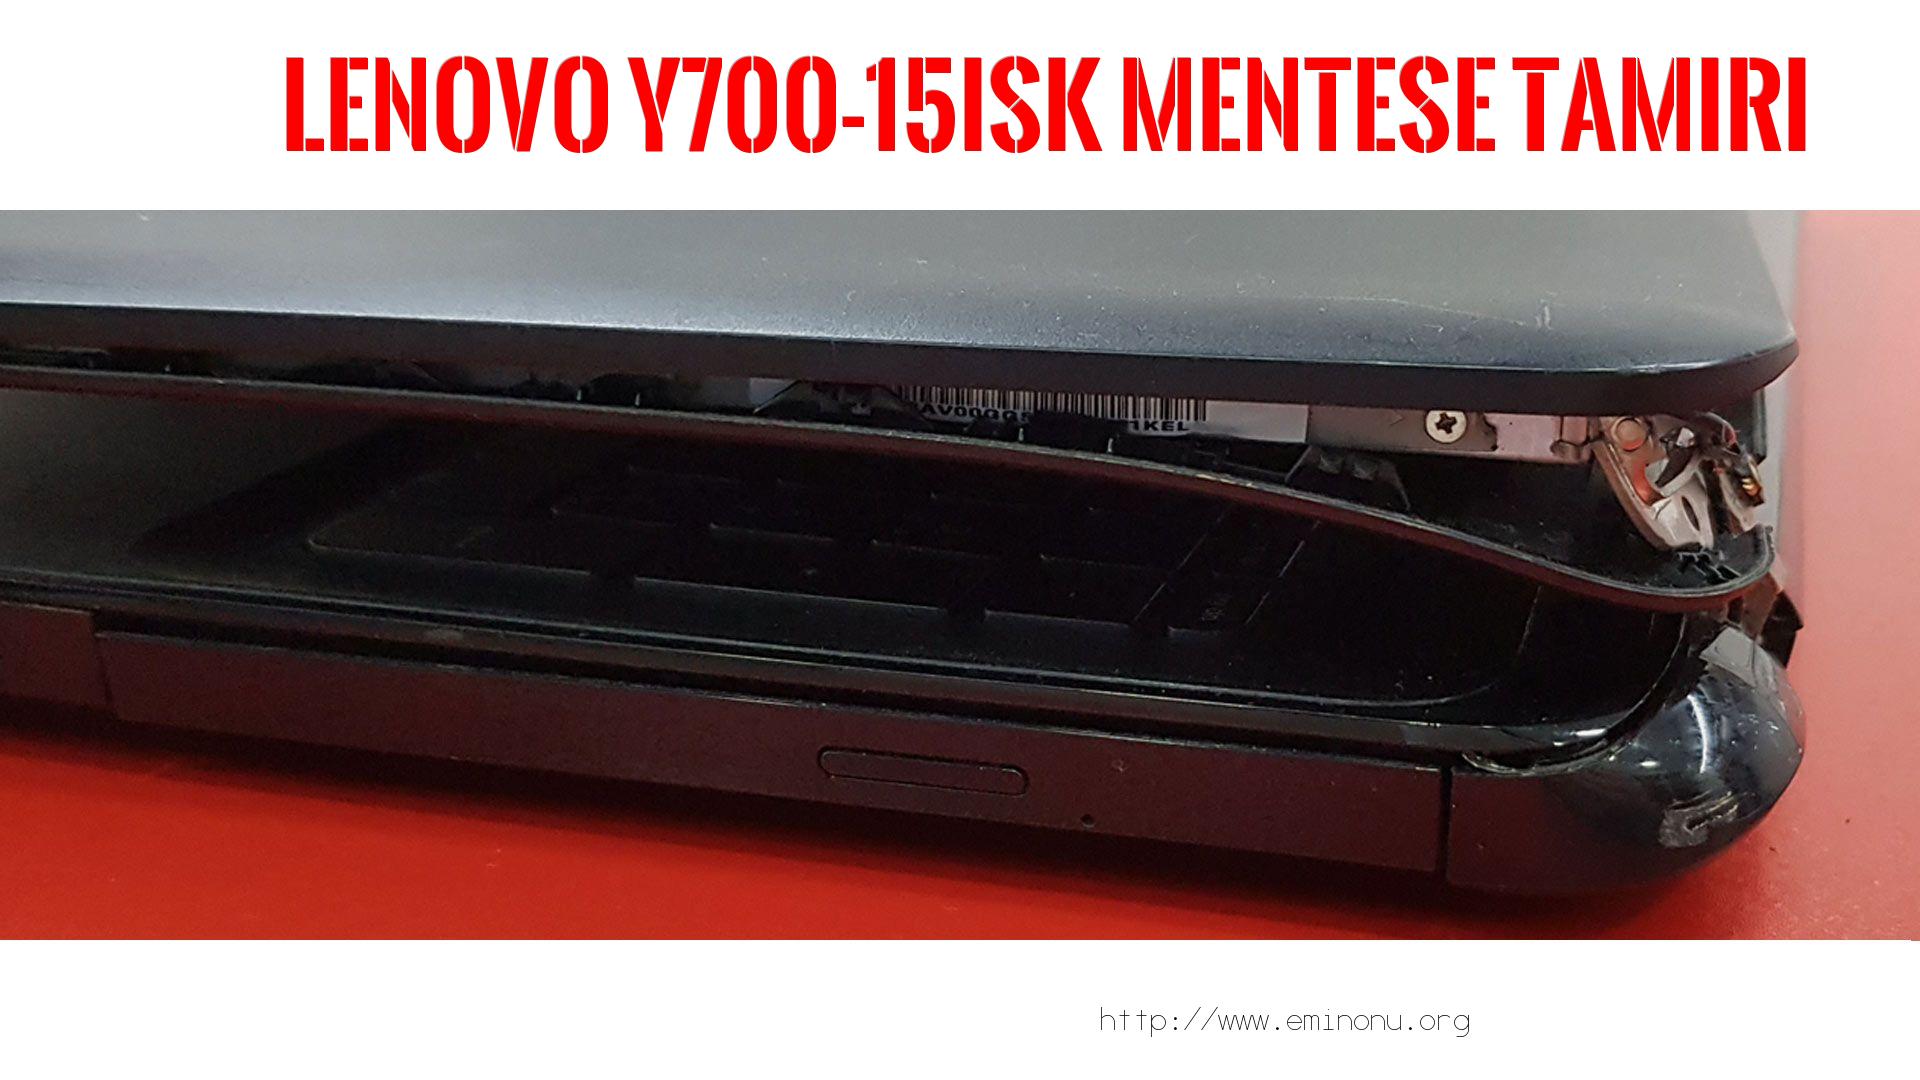 Menteşe Tamiri  Lenovo  Y700-15ısk  MENTEŞE TAMİRİ